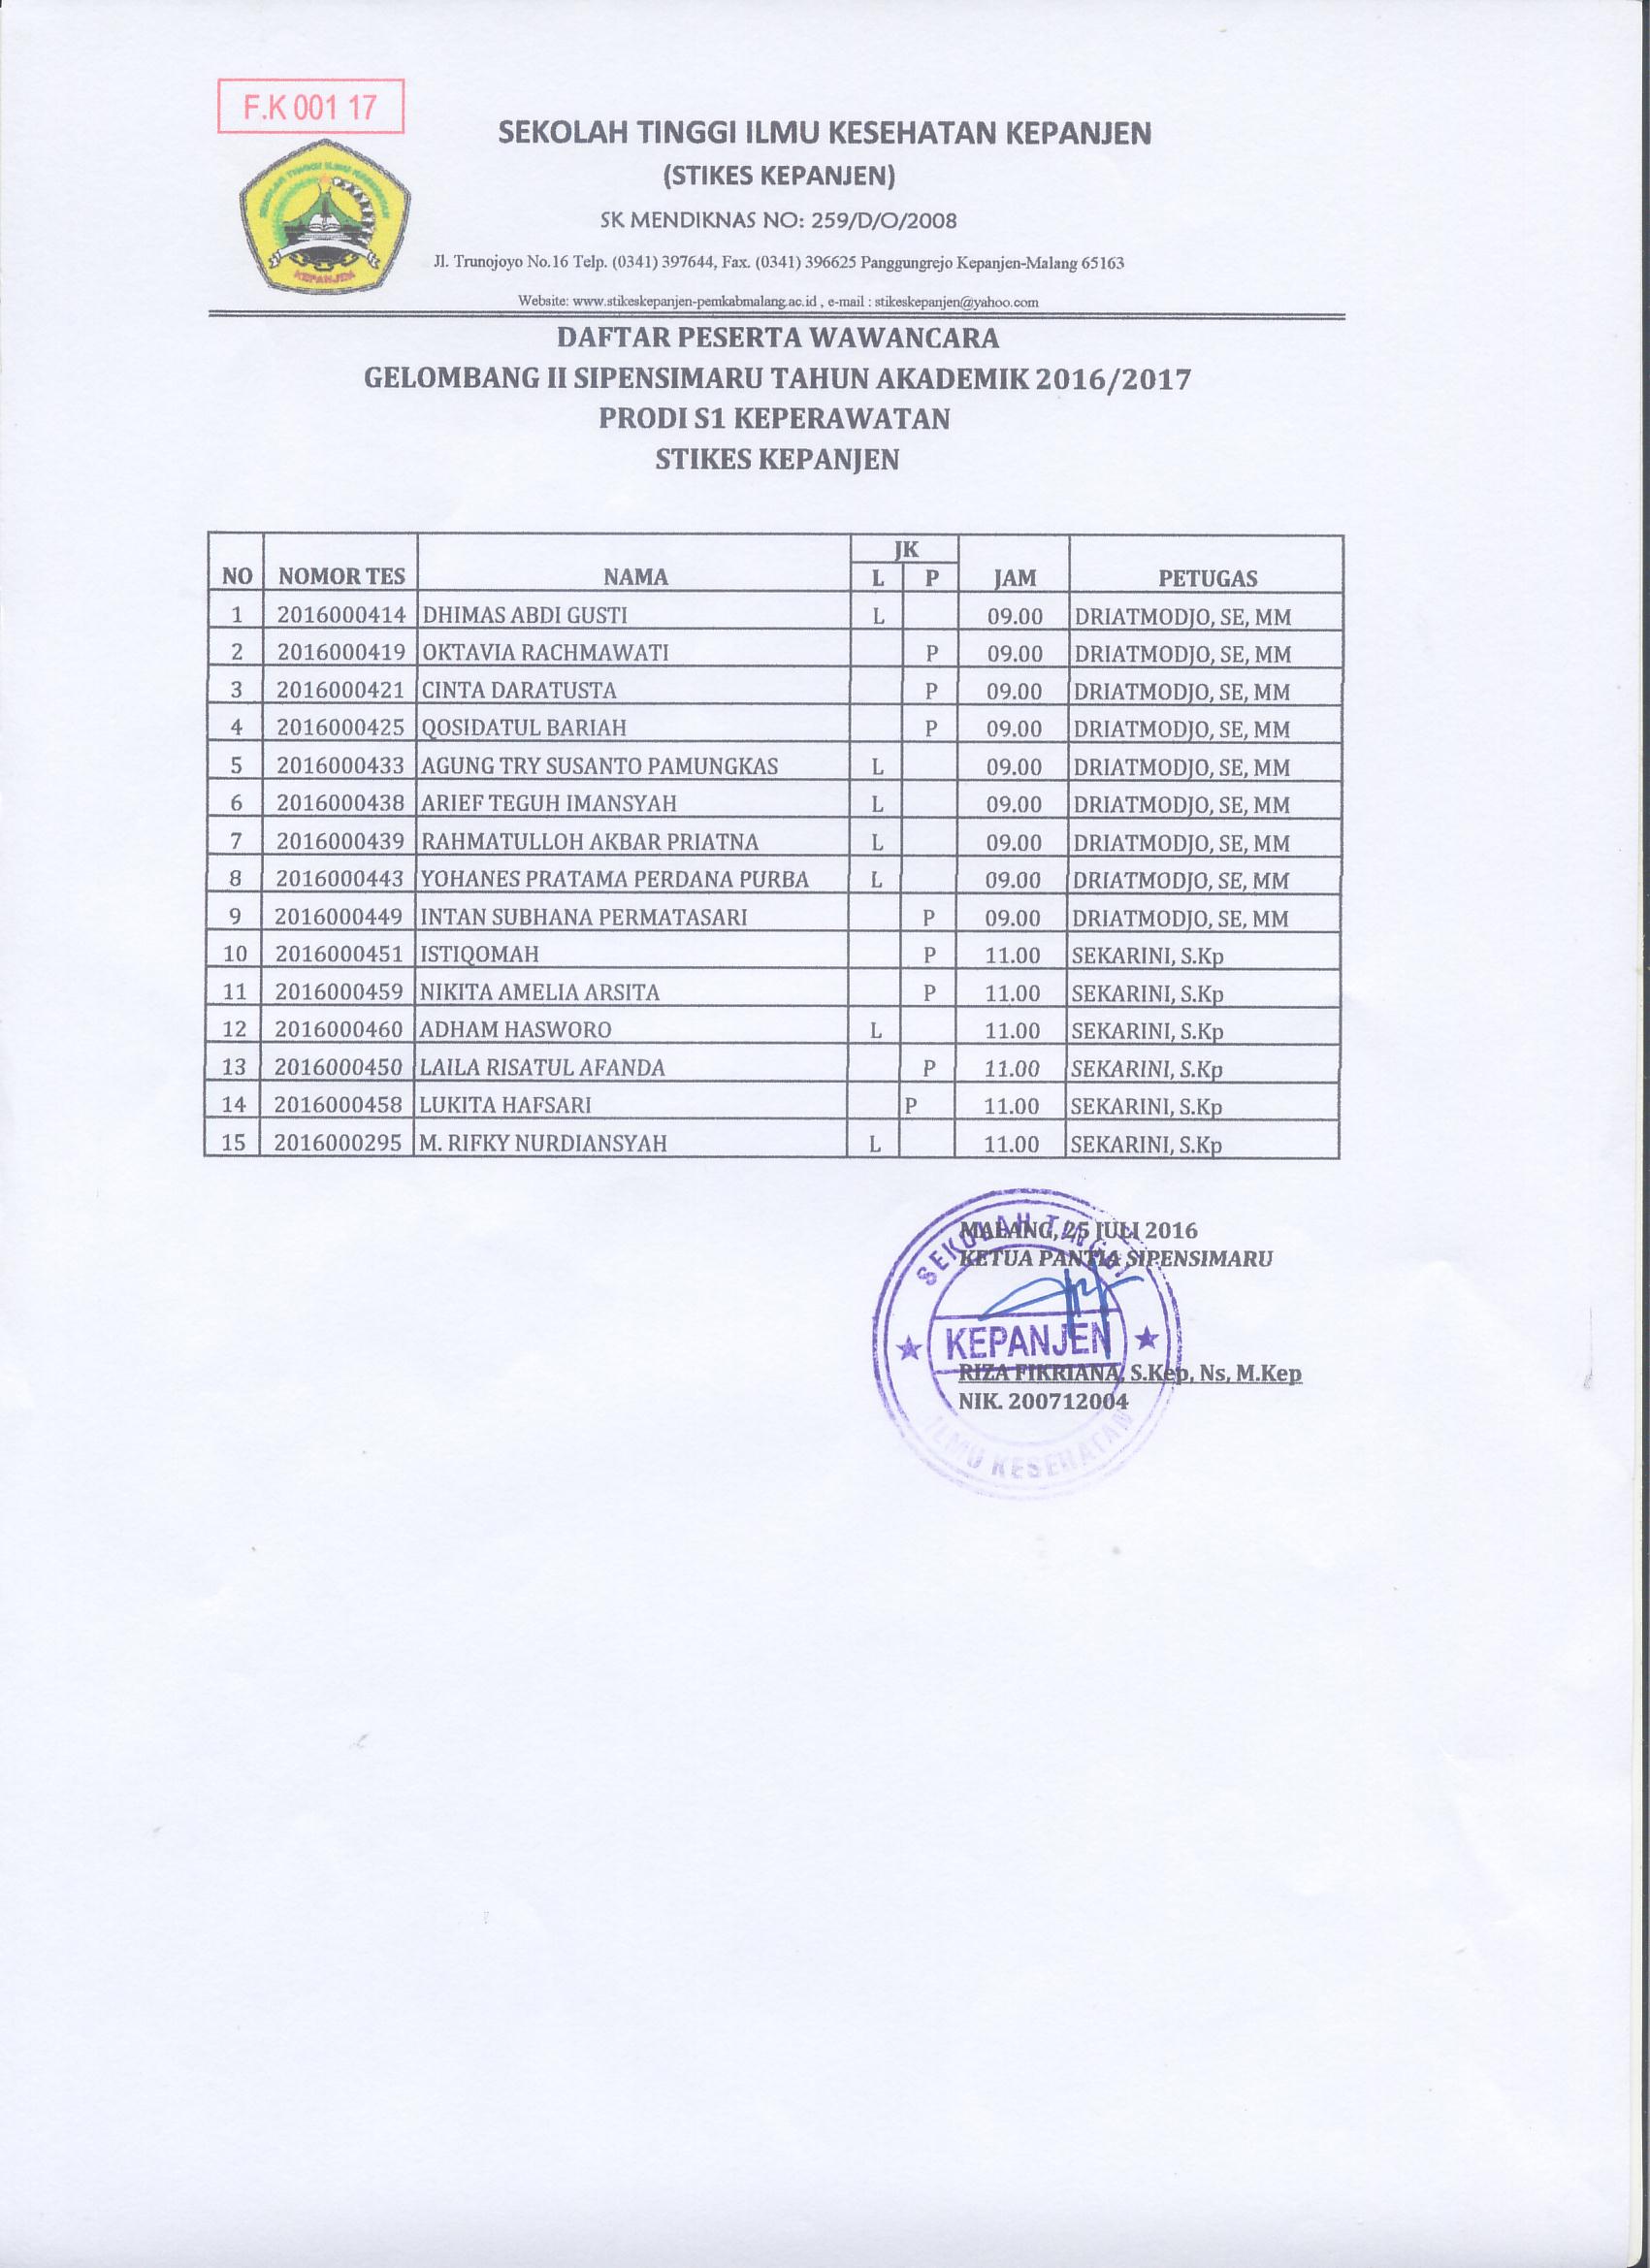 Daftar Peserta Wawancara Gelombang II Sipensimaru Tahun Akademik 2016/2017 Prodi DIII Keperawatan